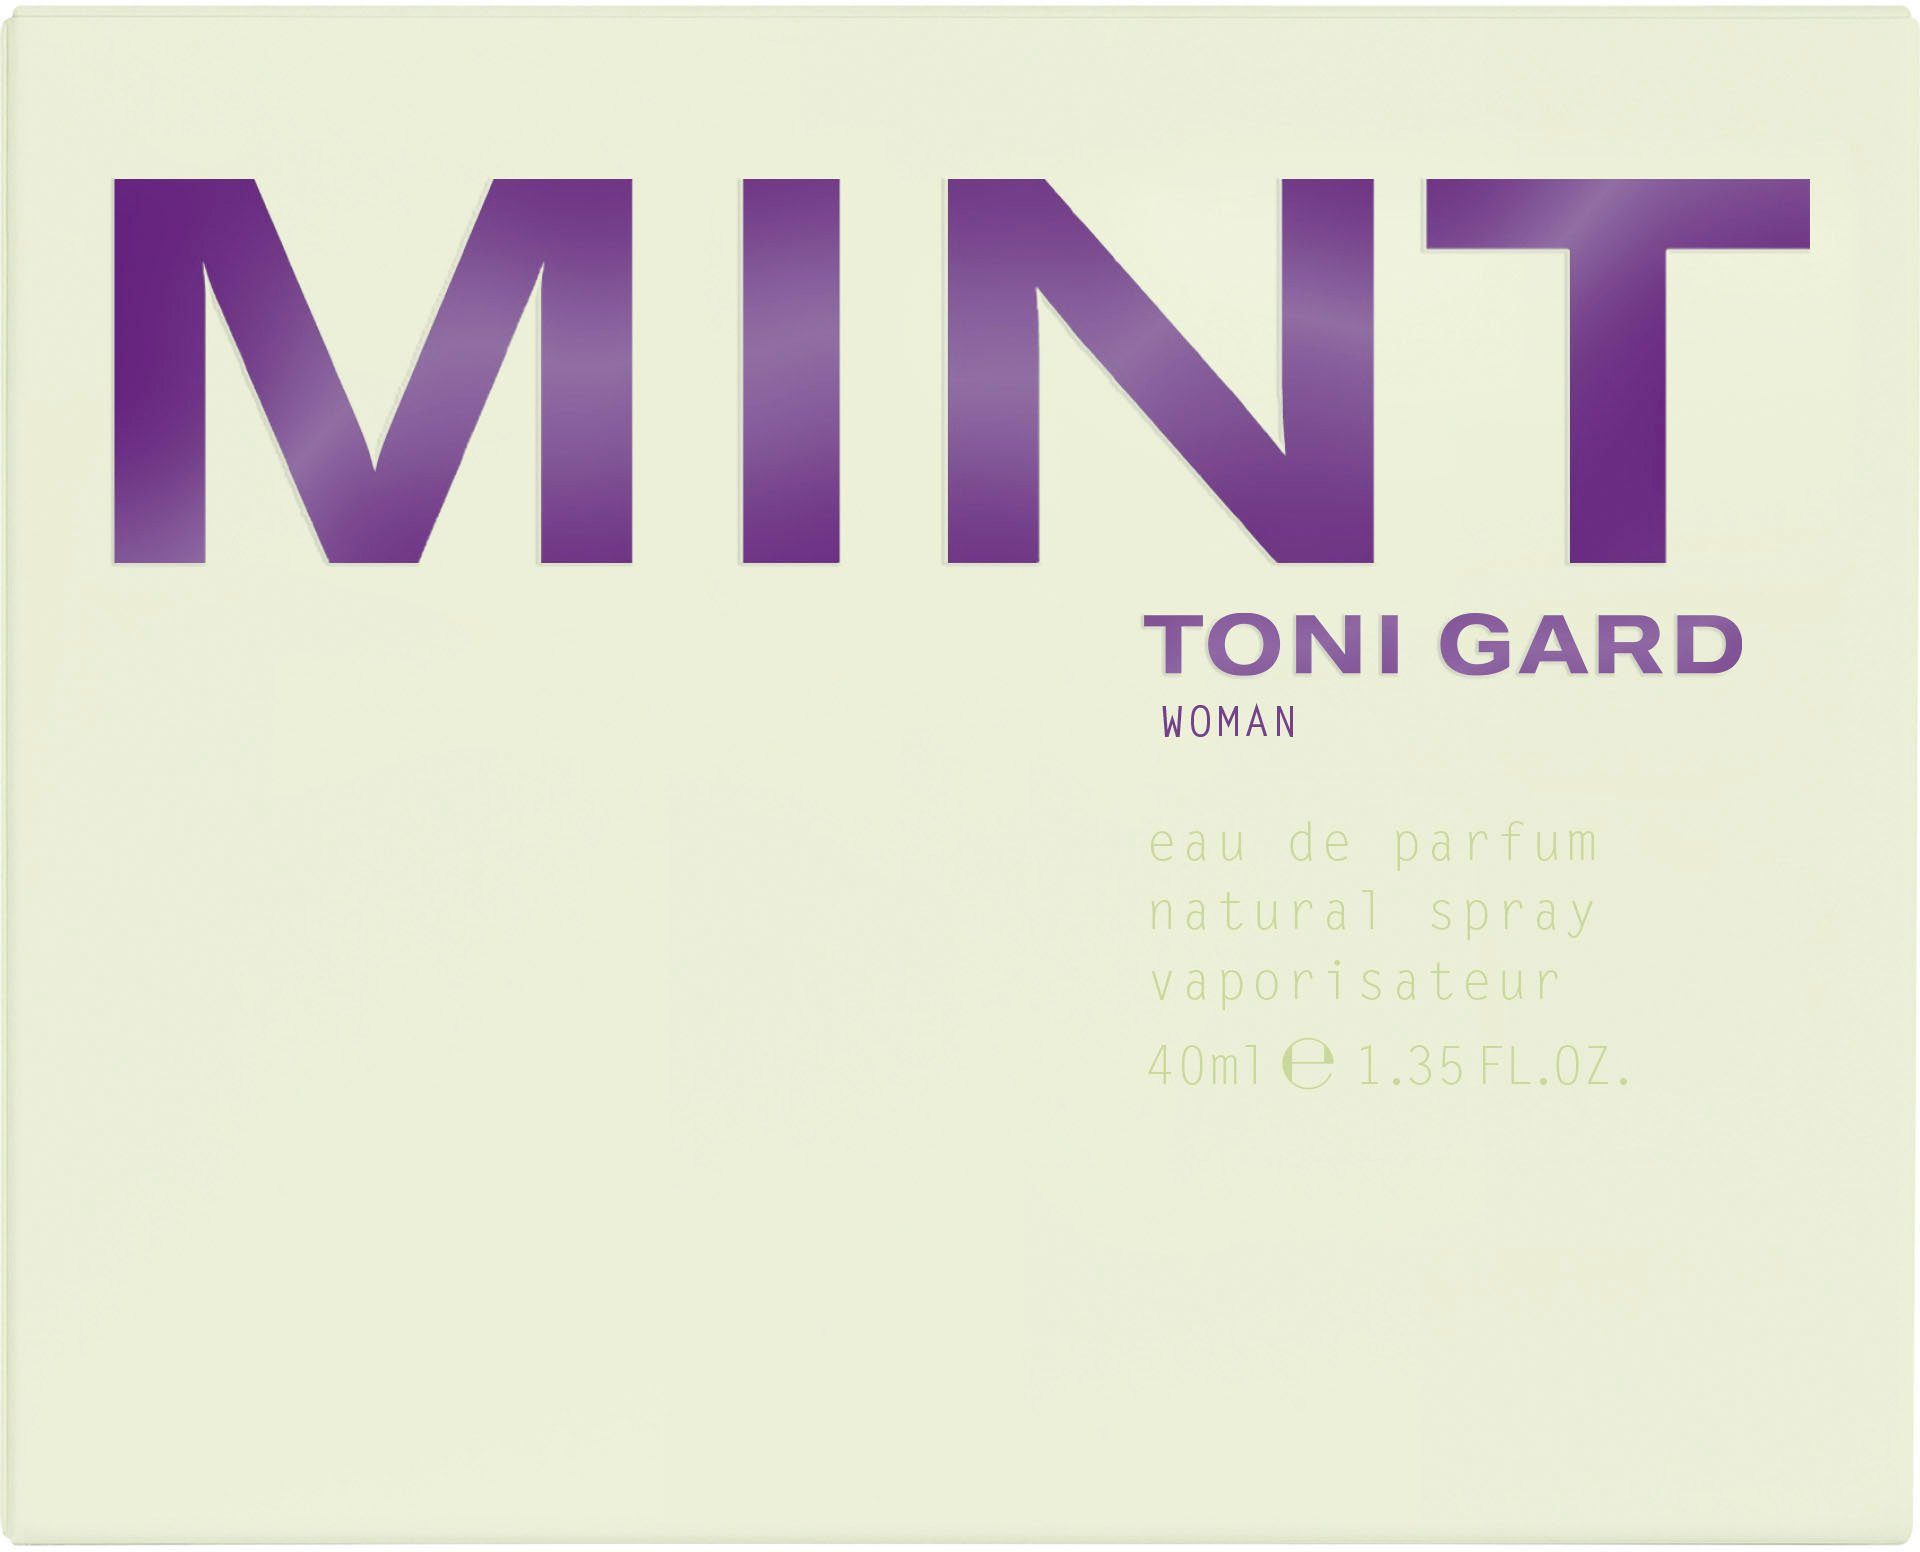 GARD de Parfum Mint TONI Eau Gard Toni